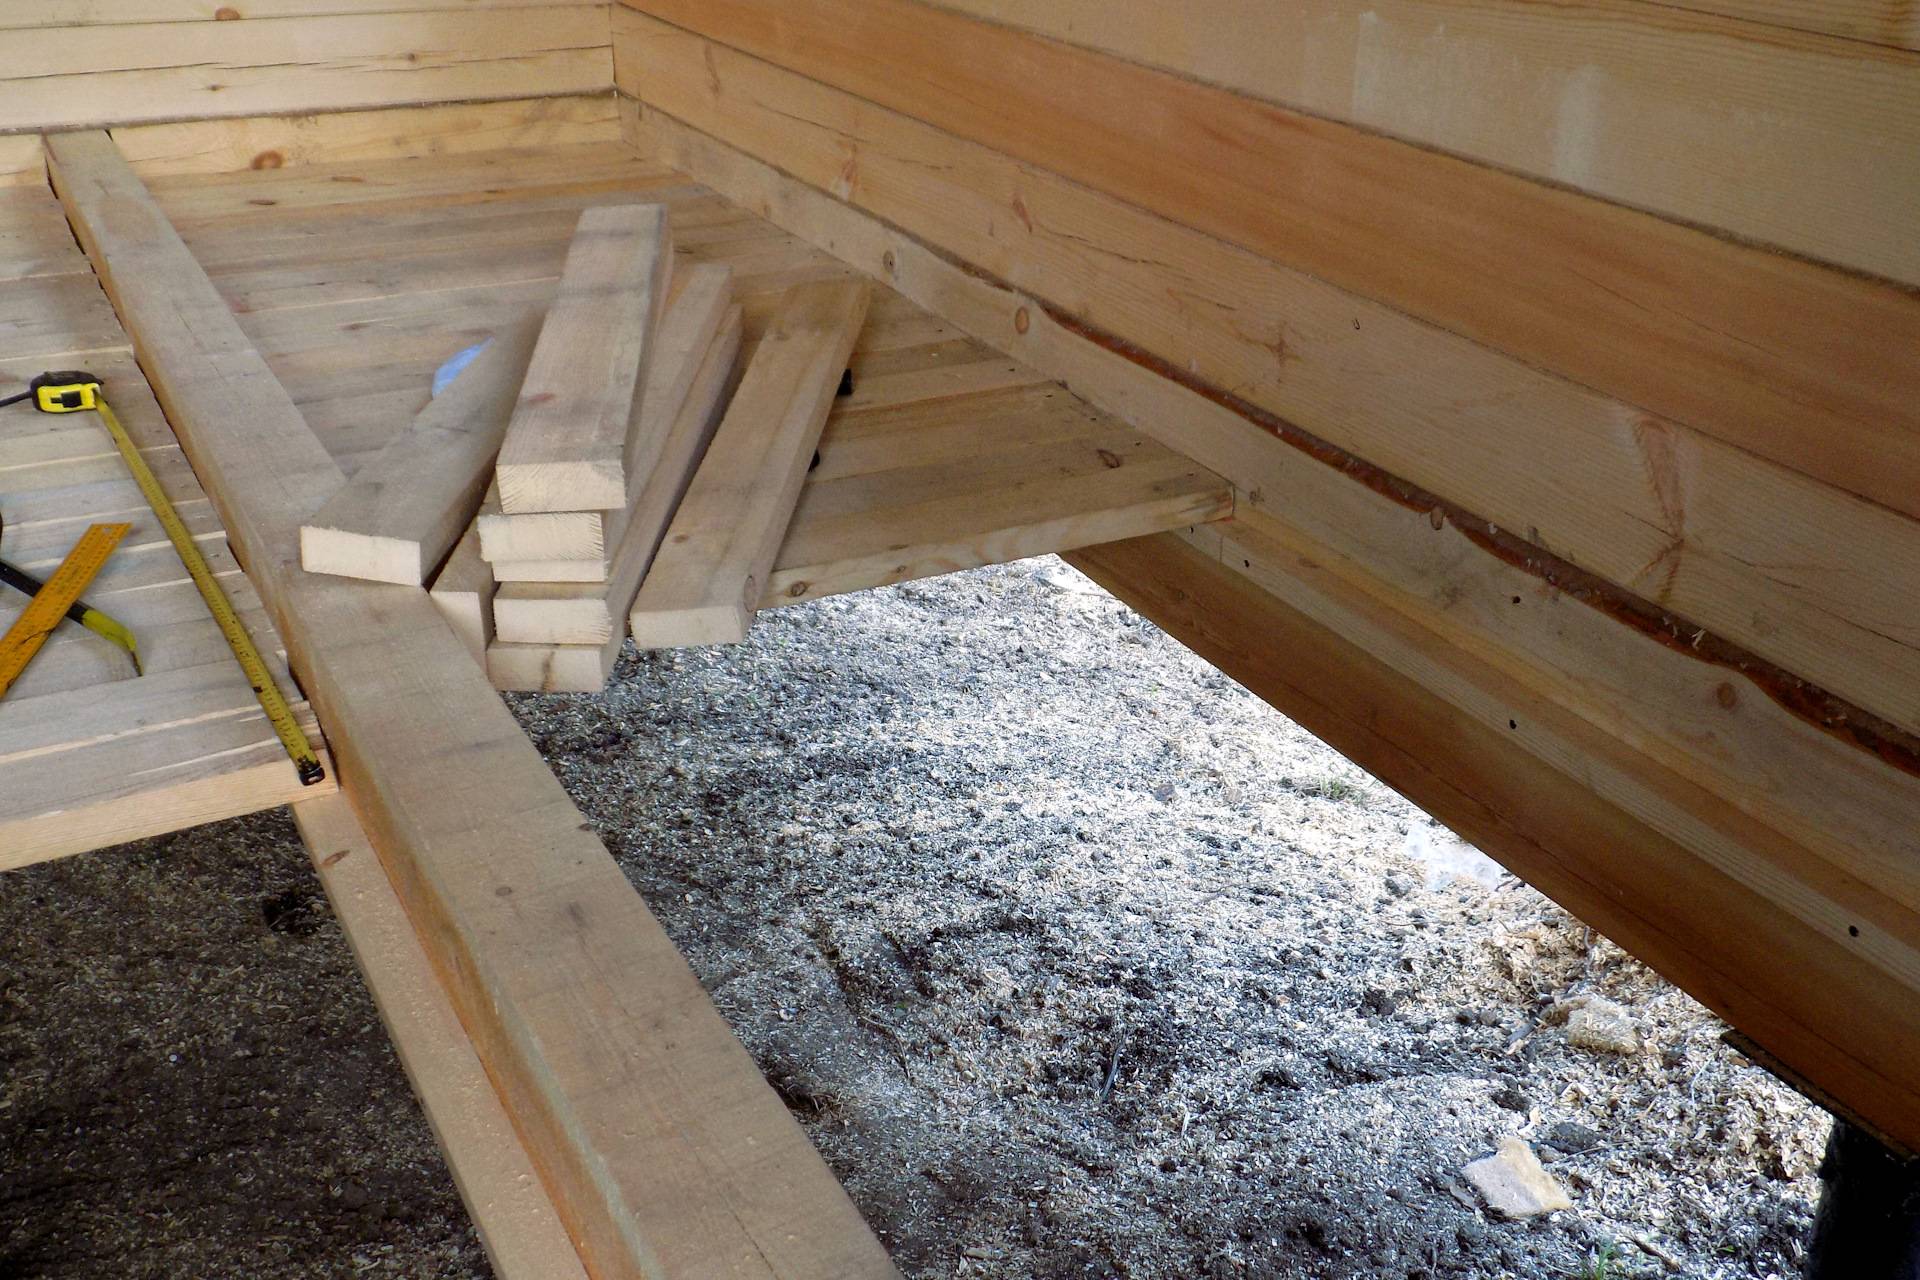 Черновой пол: предназначение, технология постройки в деревянном доме своими руками